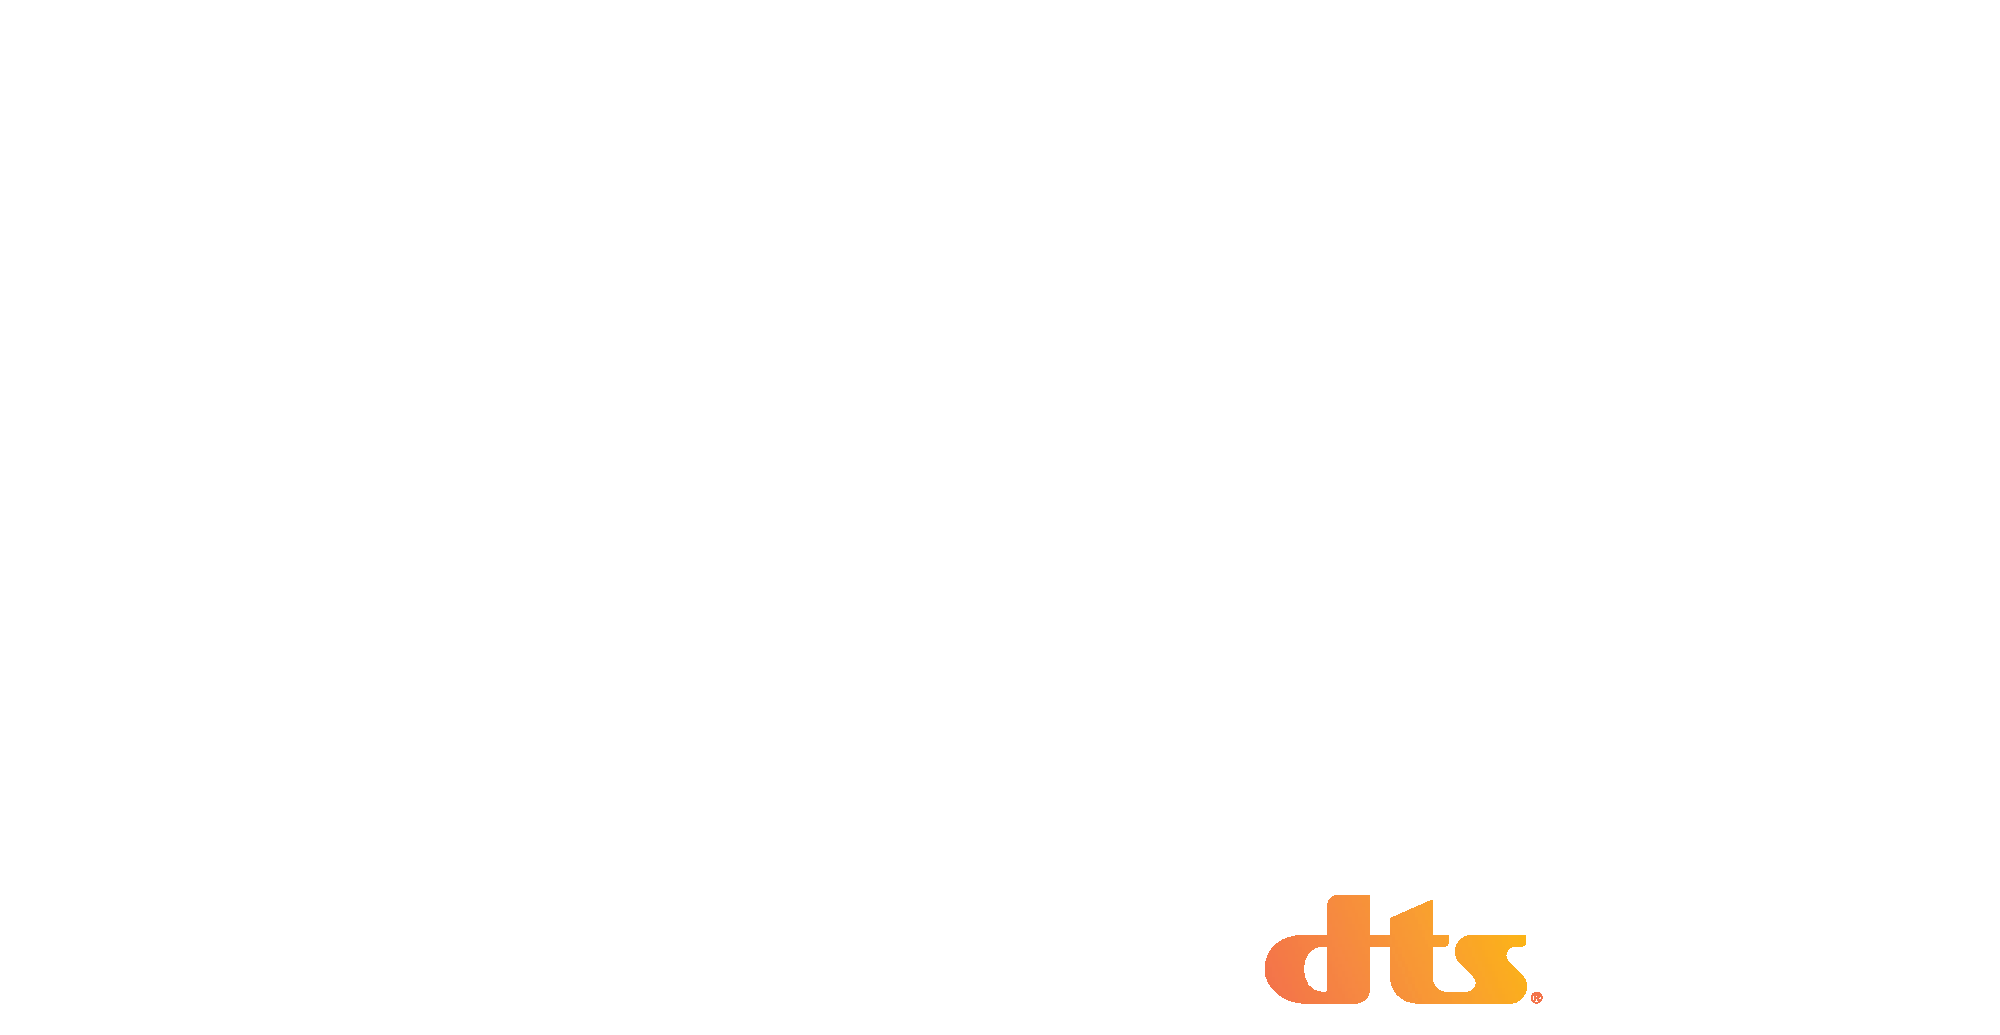 Imax Enhanced